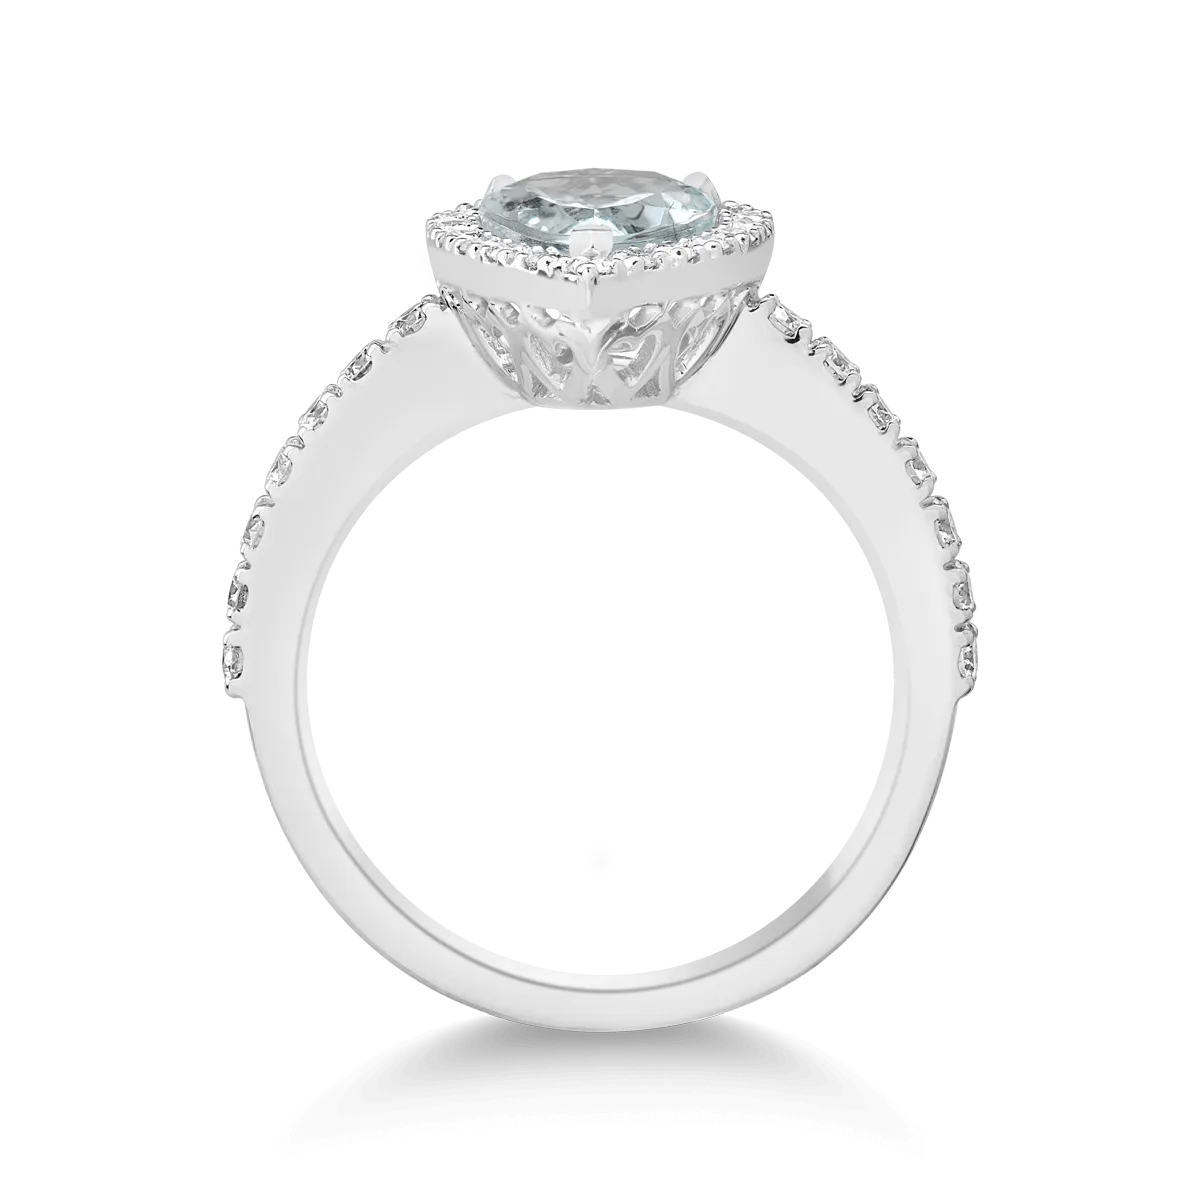 18K white gold ring with 1.63ct aquamarine and 0.59ct diamonds